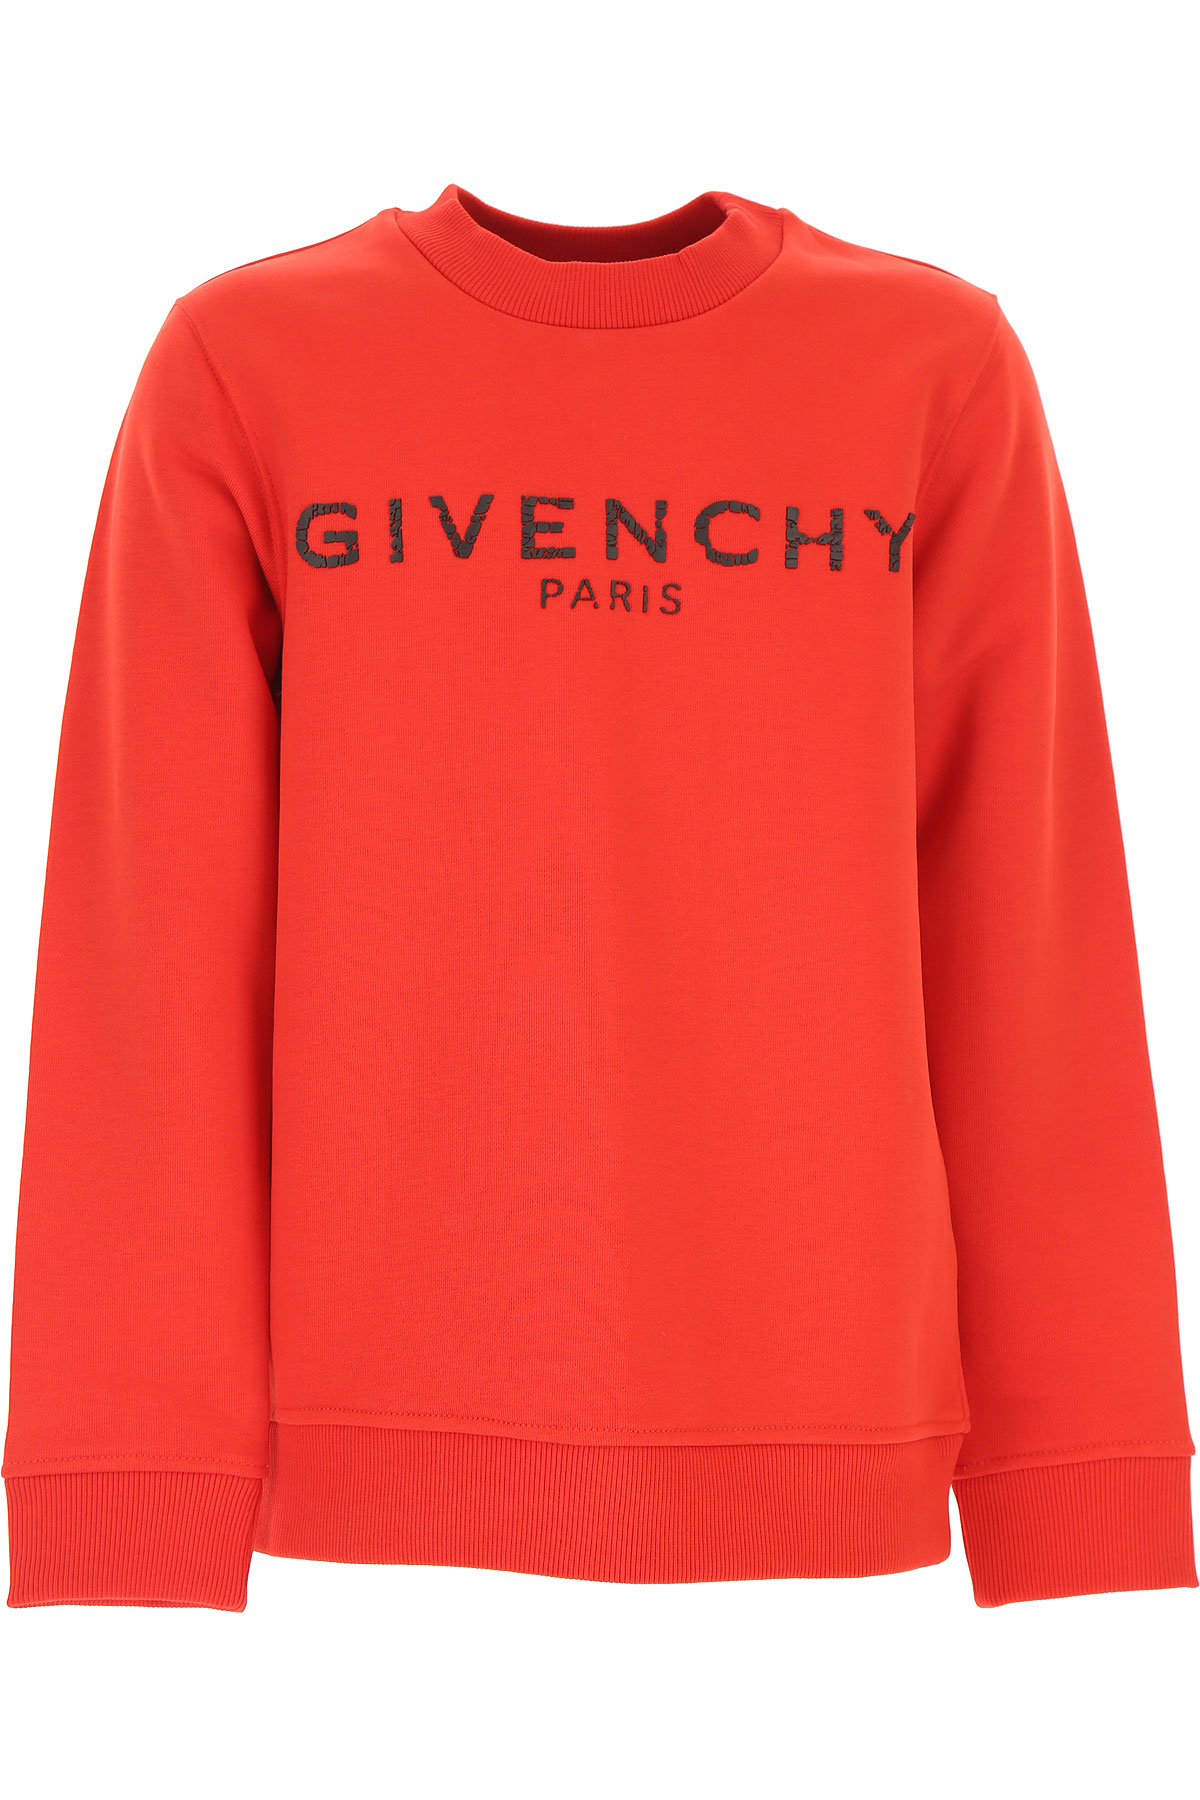 Givenchy Kinder Sweatshirt & Kapuzenpullover für Mädchen, Rot, Baumwolle, 2017, 10Y 4Y 5Y 6Y 8Y